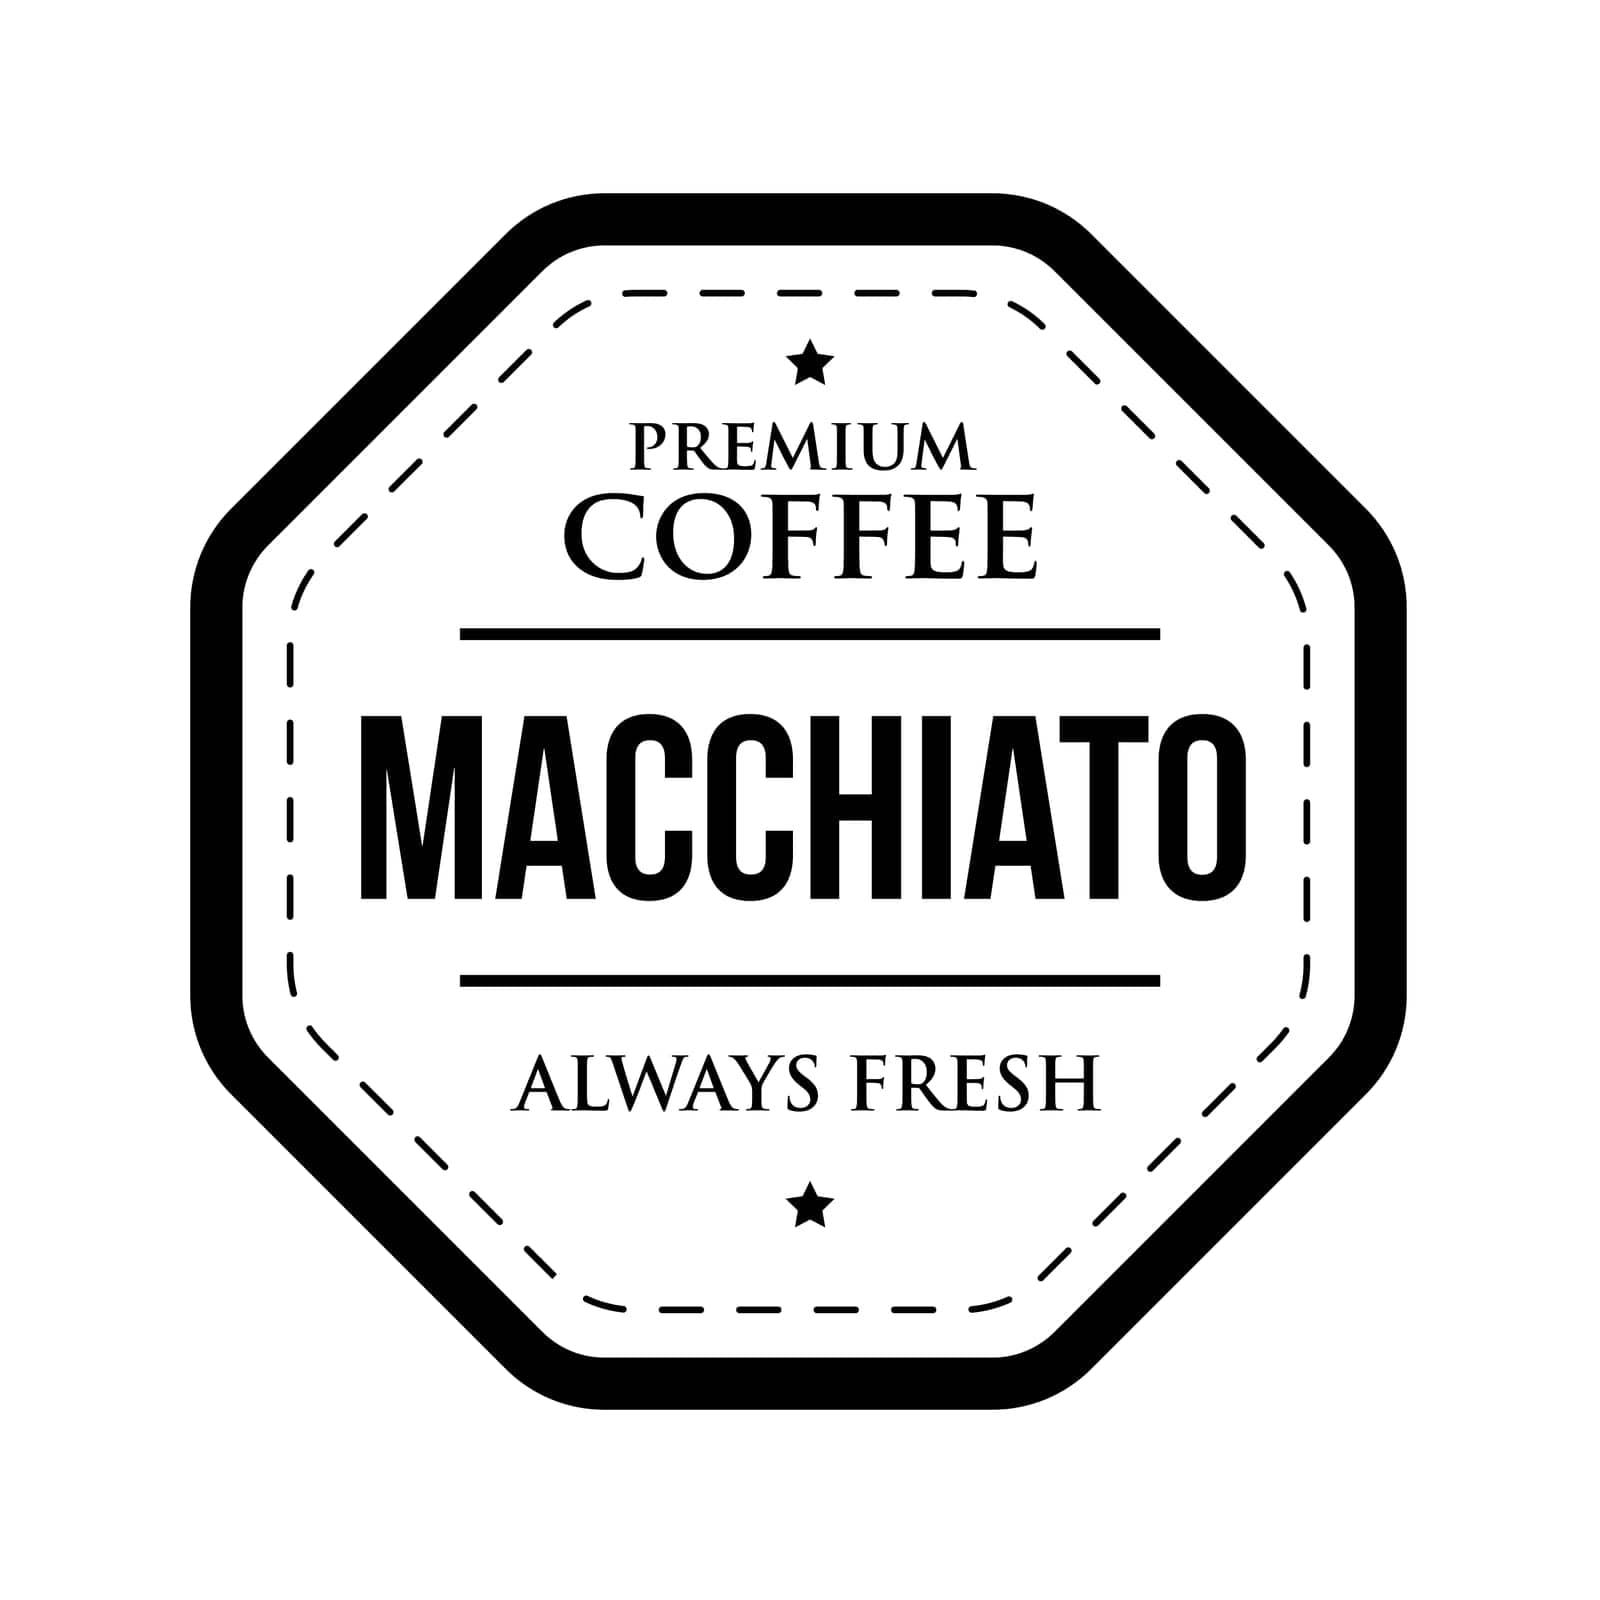 Coffee Macchiato vintage stamp by Nutil